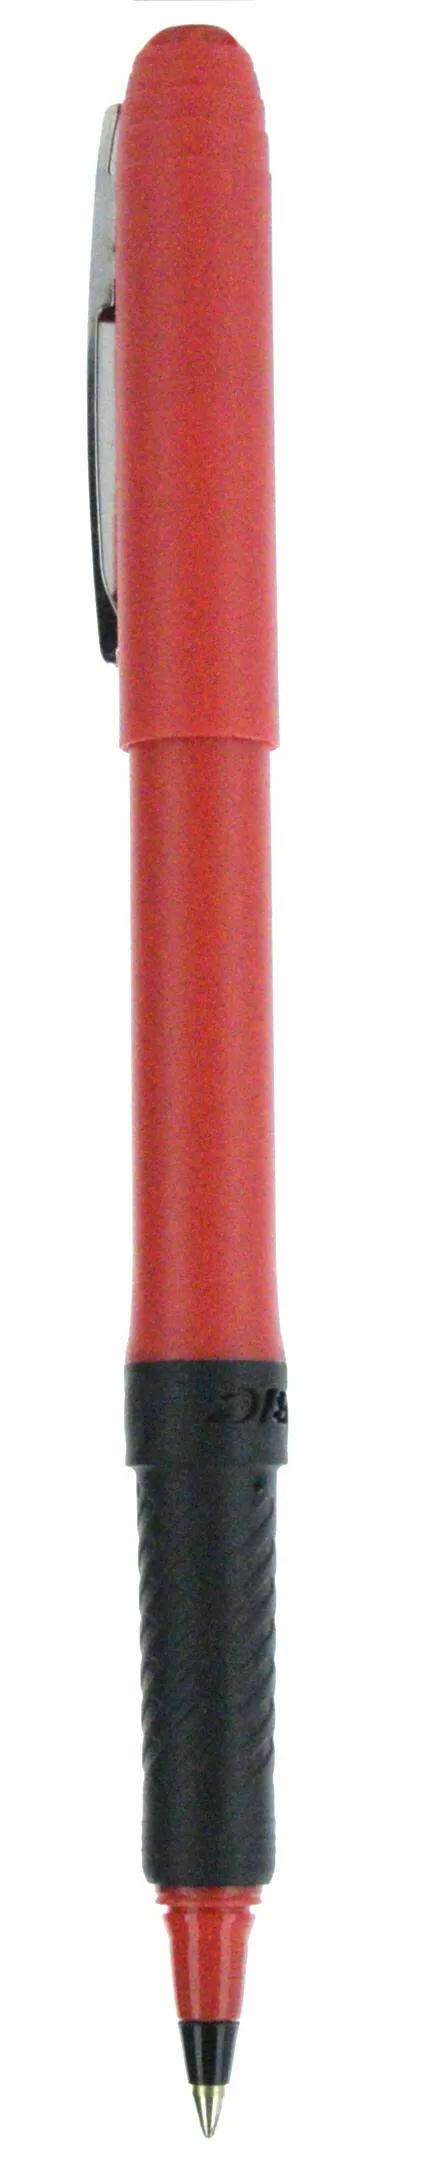 BIC® Grip Roller Pen 95 of 147